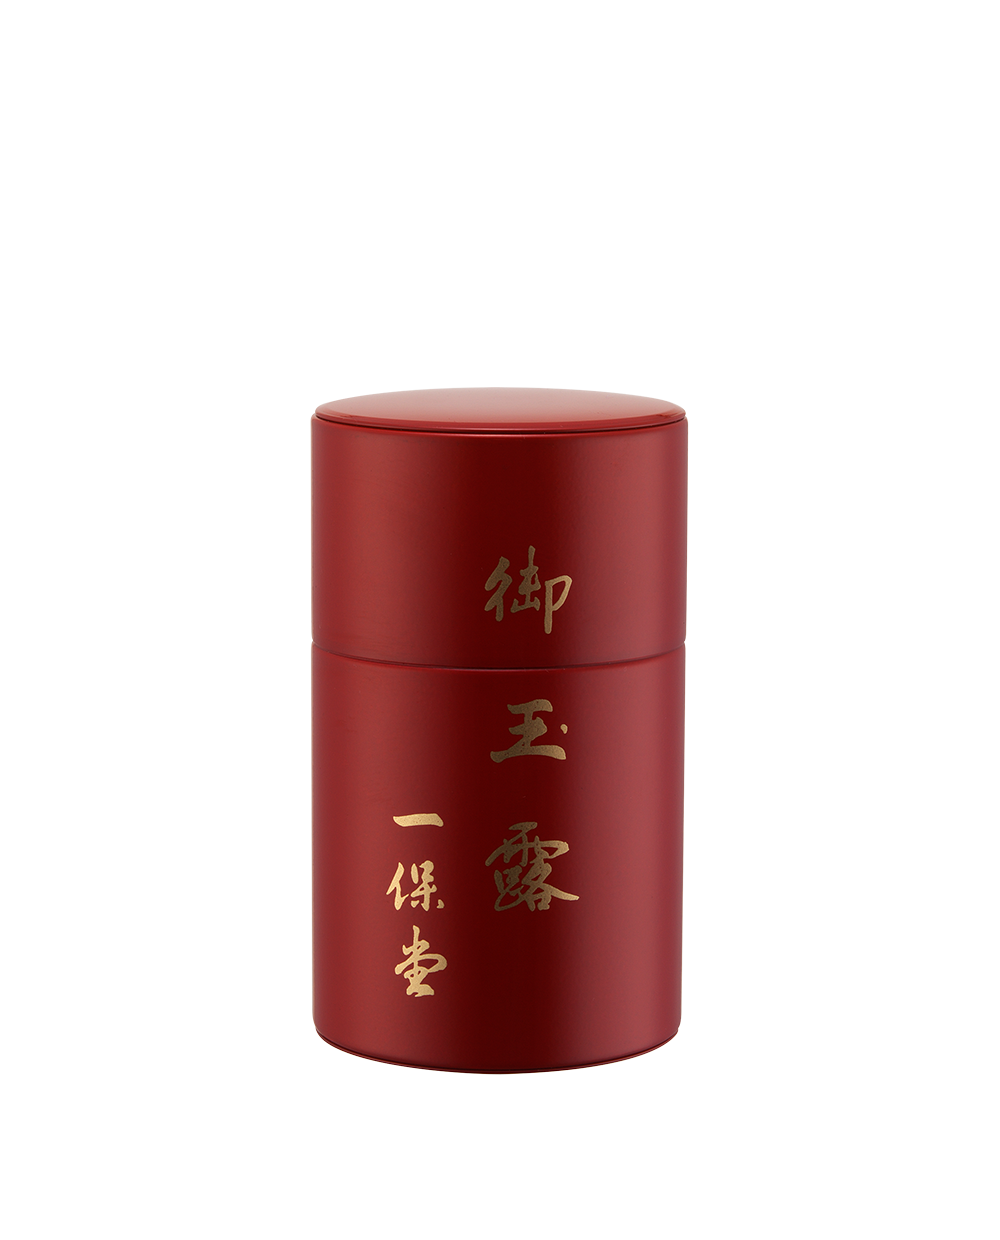 玉露 麟鳳(りんぽう)小缶箱(80g) – 一保堂茶舗